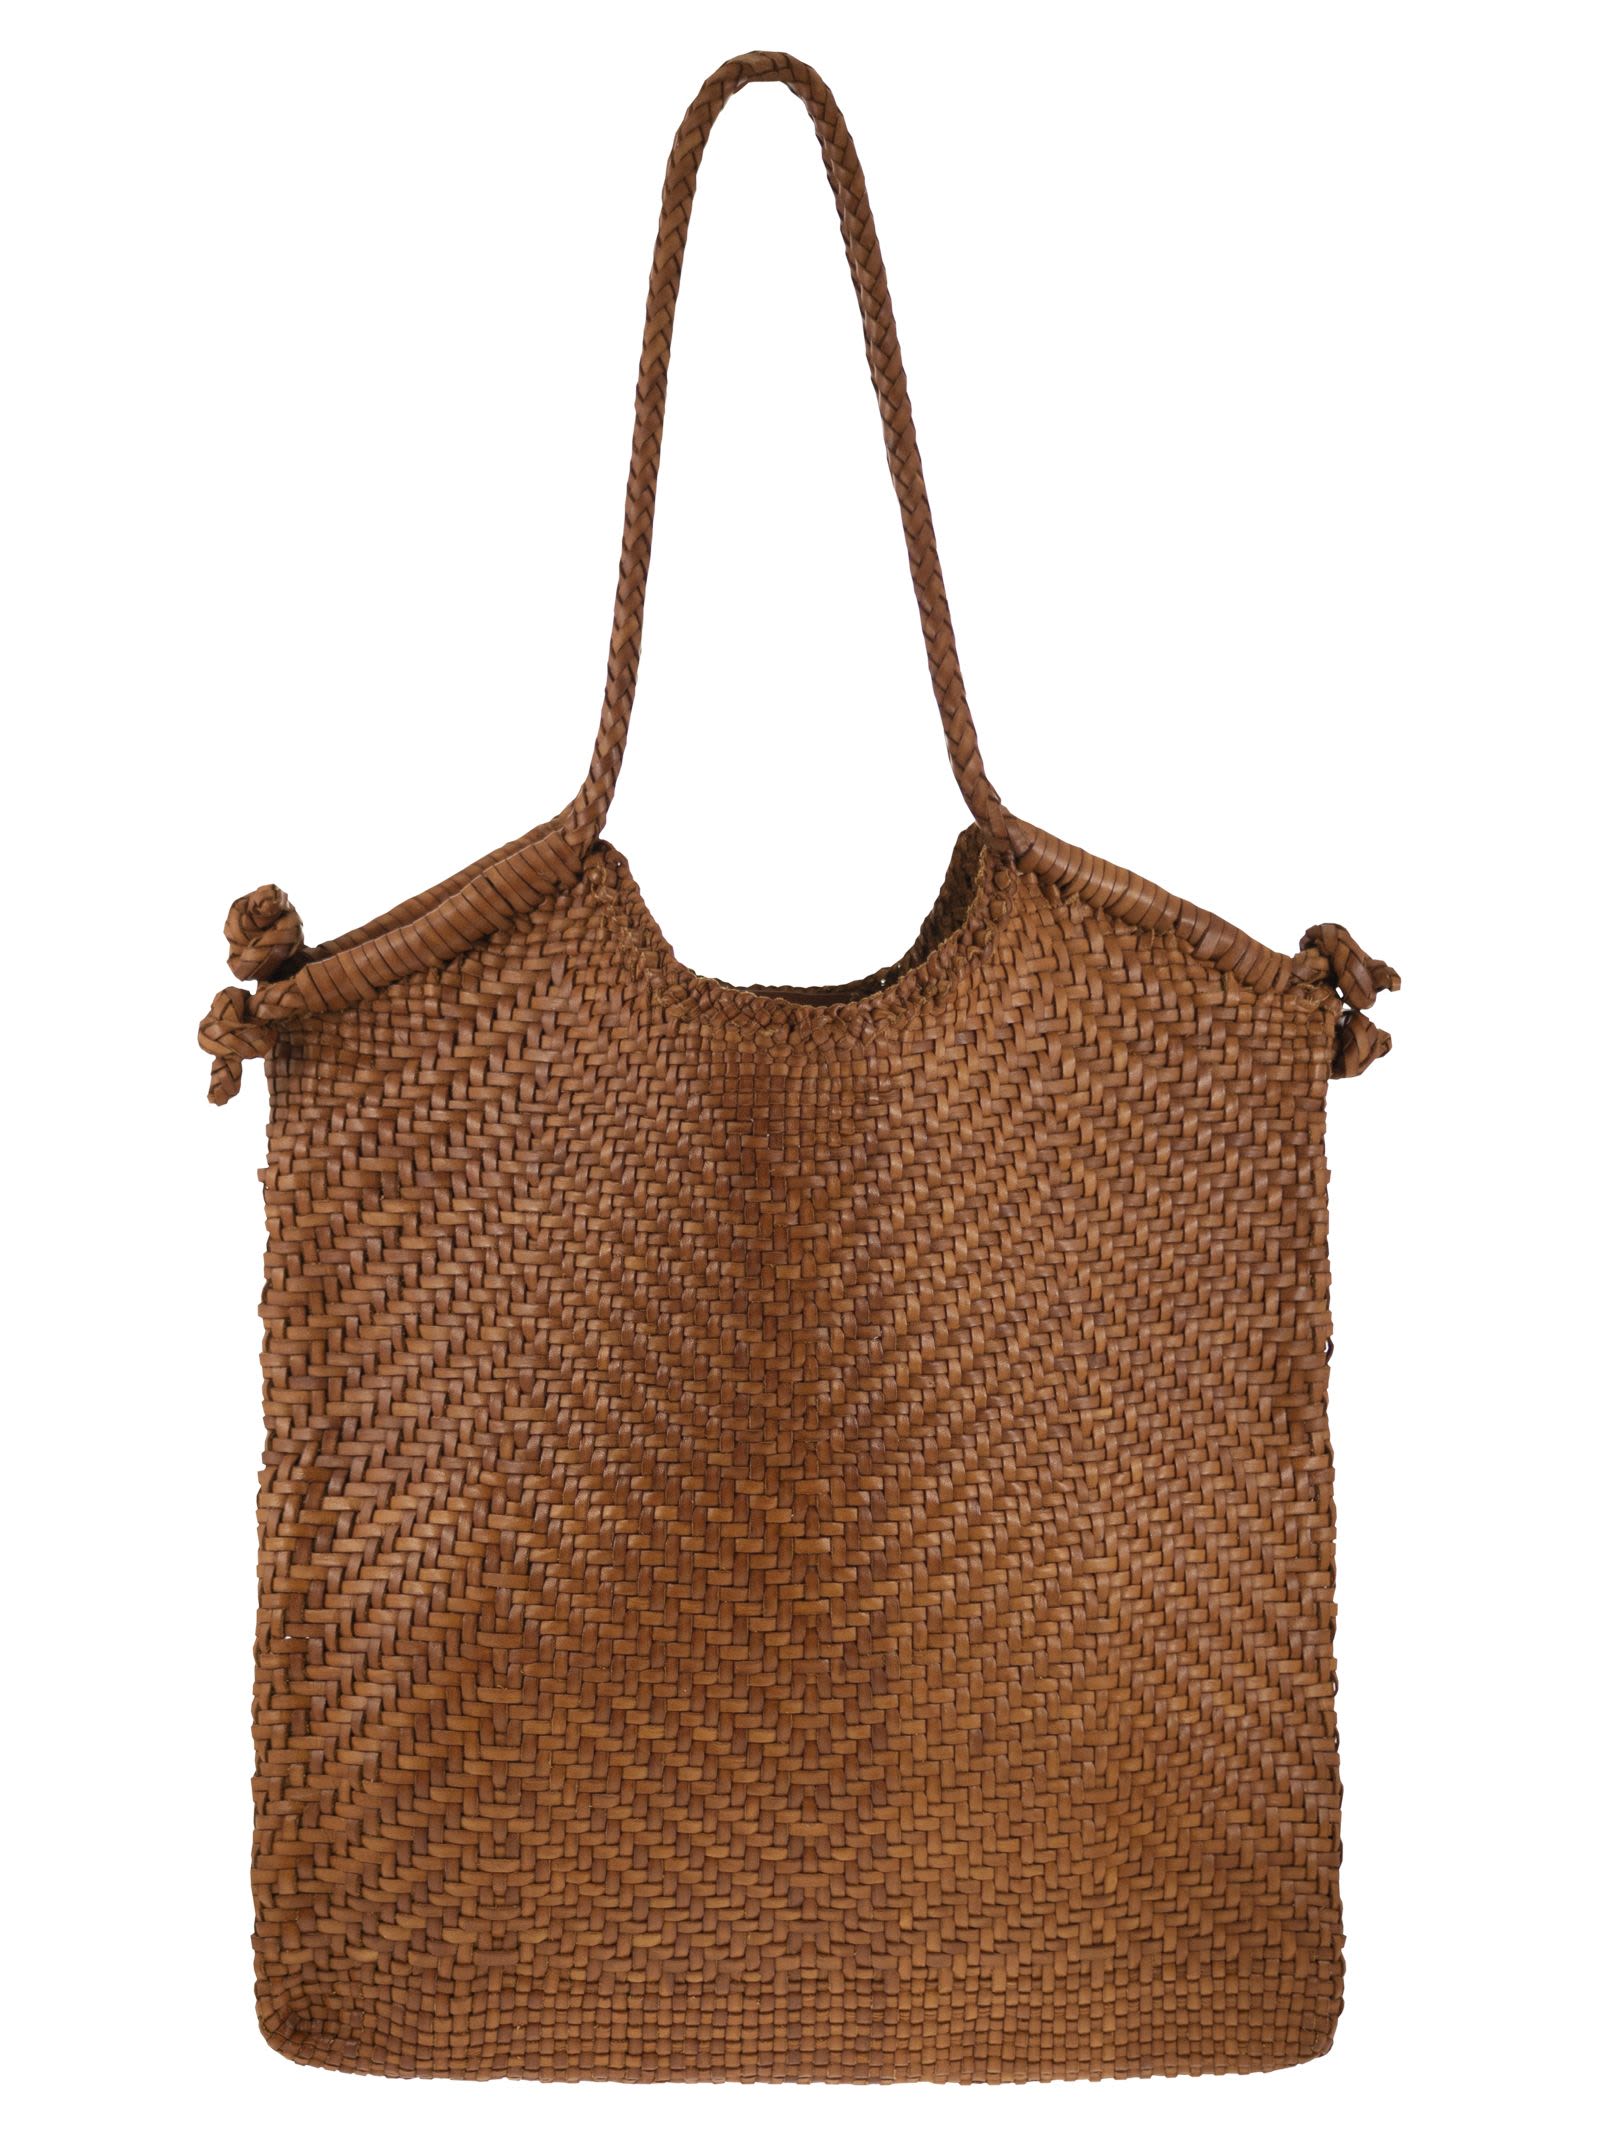 Minga Tote - Woven Leather Bag